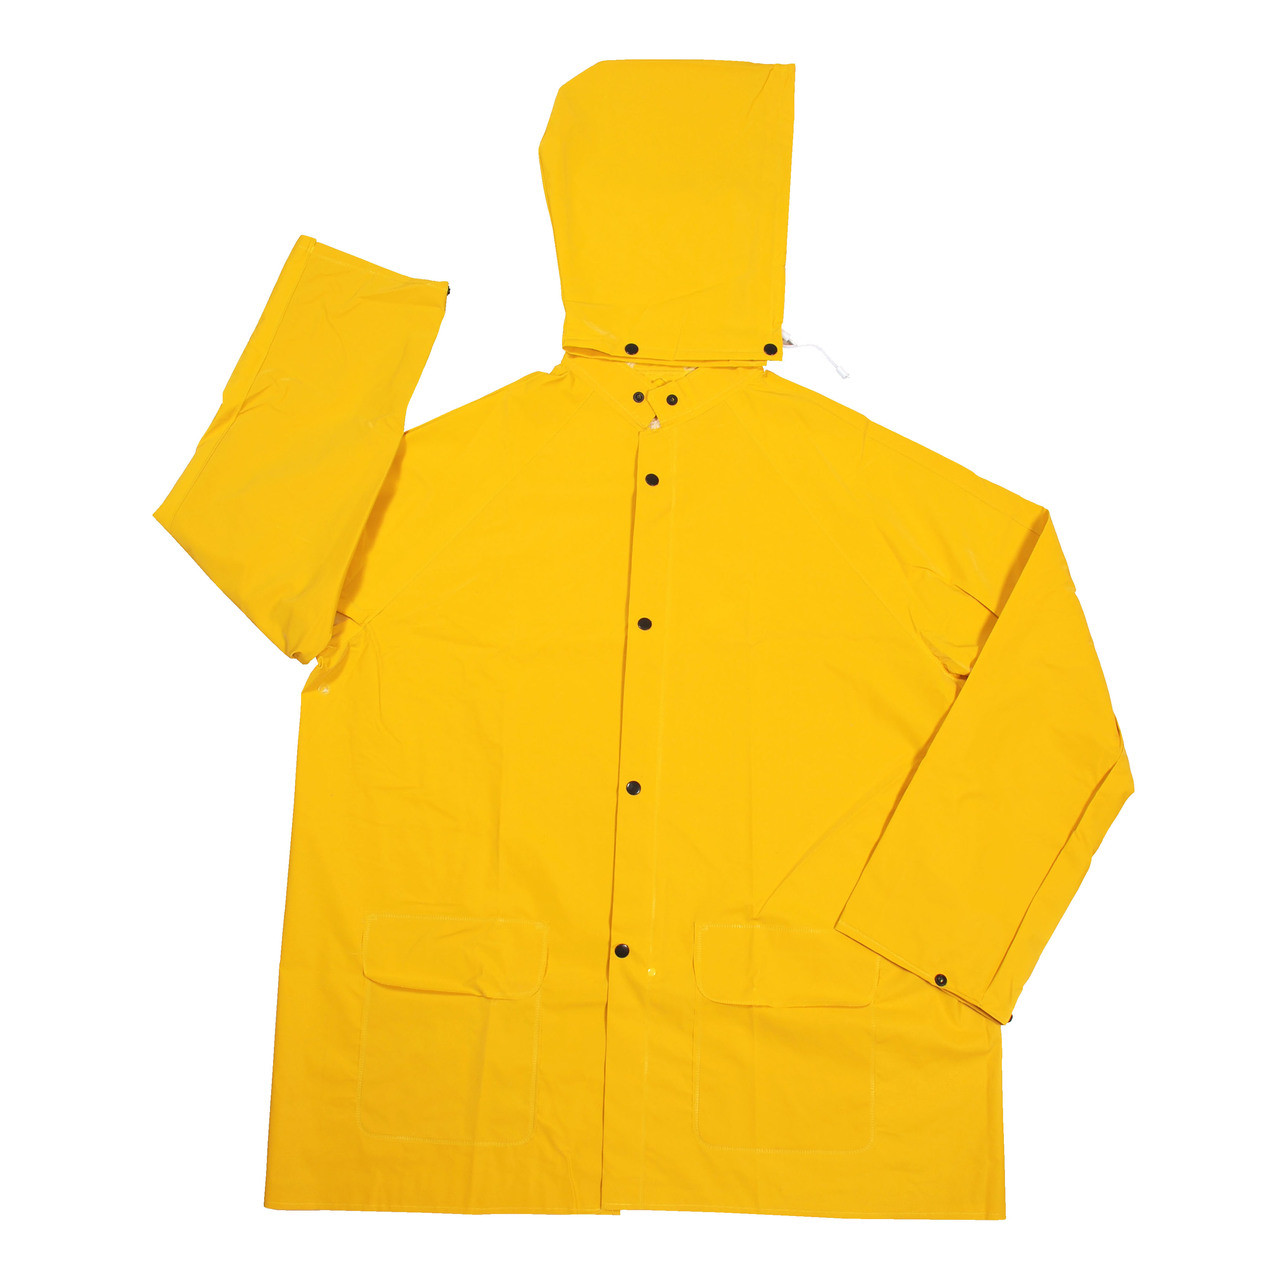 STORMFRONT 2-Piece Rain Jacket - Cordova |PPE Pros